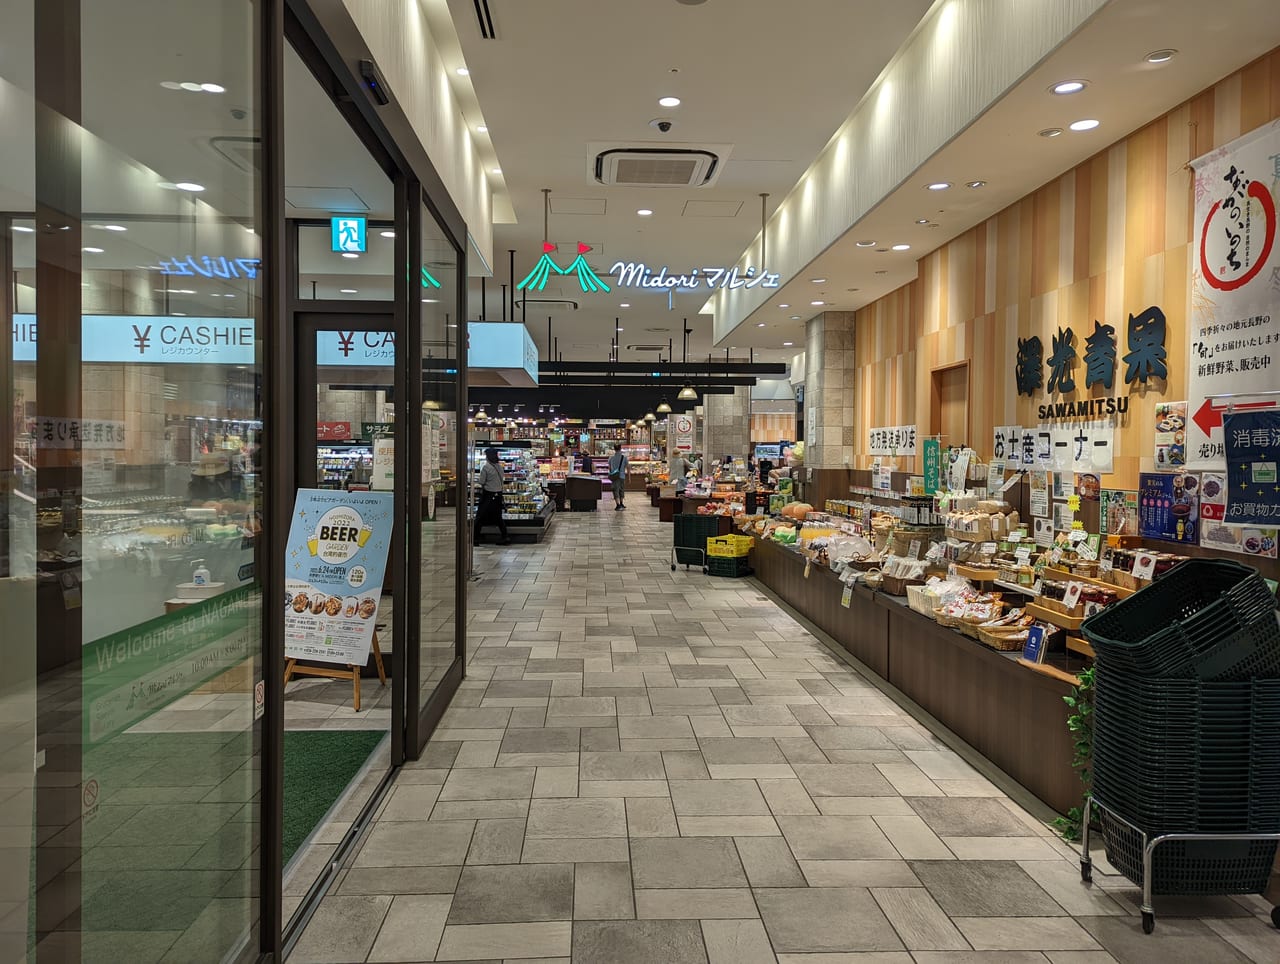 長野市 新鮮な食材がいっぱい 長野駅からのお帰りに Midoriマルシェ でお買い物 号外net 長野